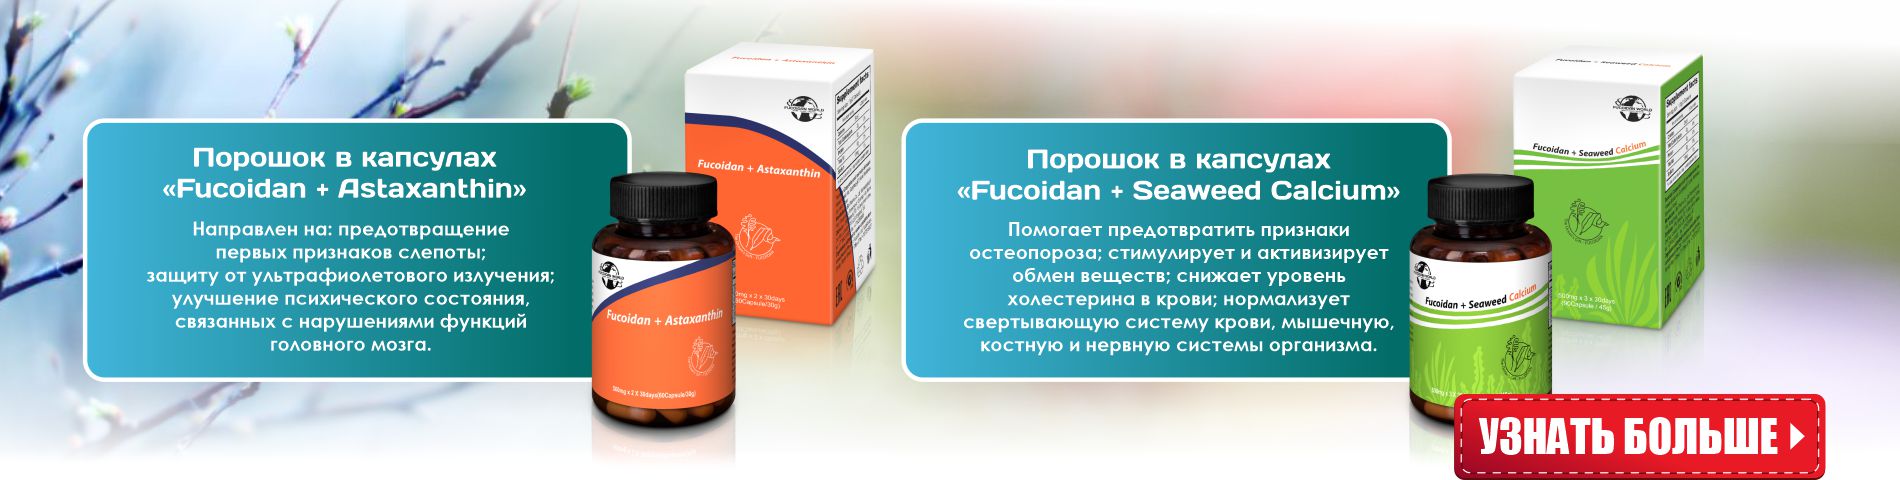 Продукт с фукоиданом, астаксантином Fucoidan + Astaxanthin, продукт с фукоиданом, кальцием Fucoidan + Seaweed Calcium